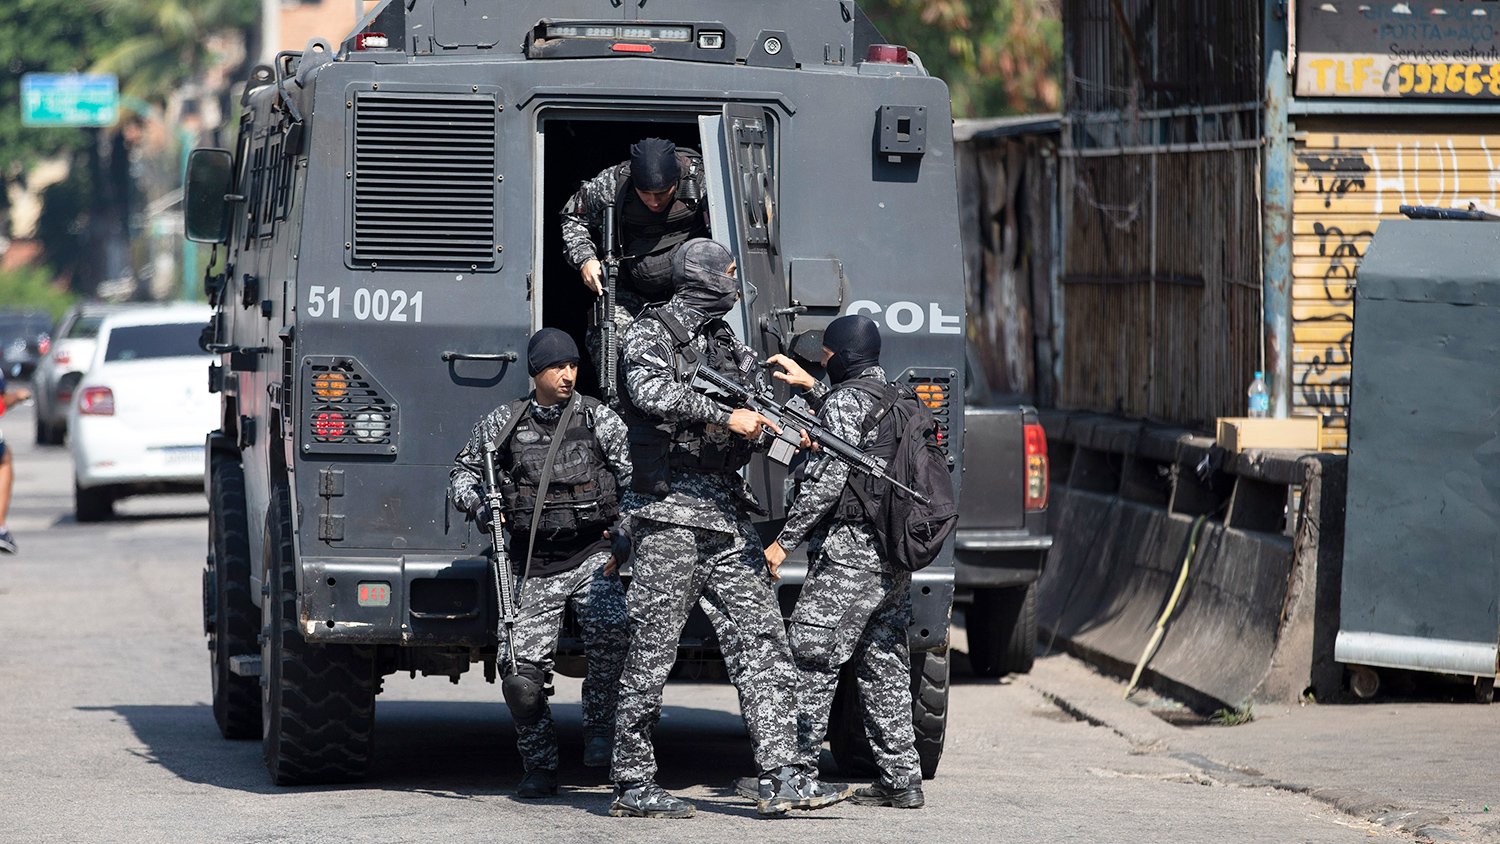 Ոստիկանությունը պարզաբանում է տվել Ռիո դե Ժանեյրոյում 25 զոհ ունեցած գործողության վերաբերյալ